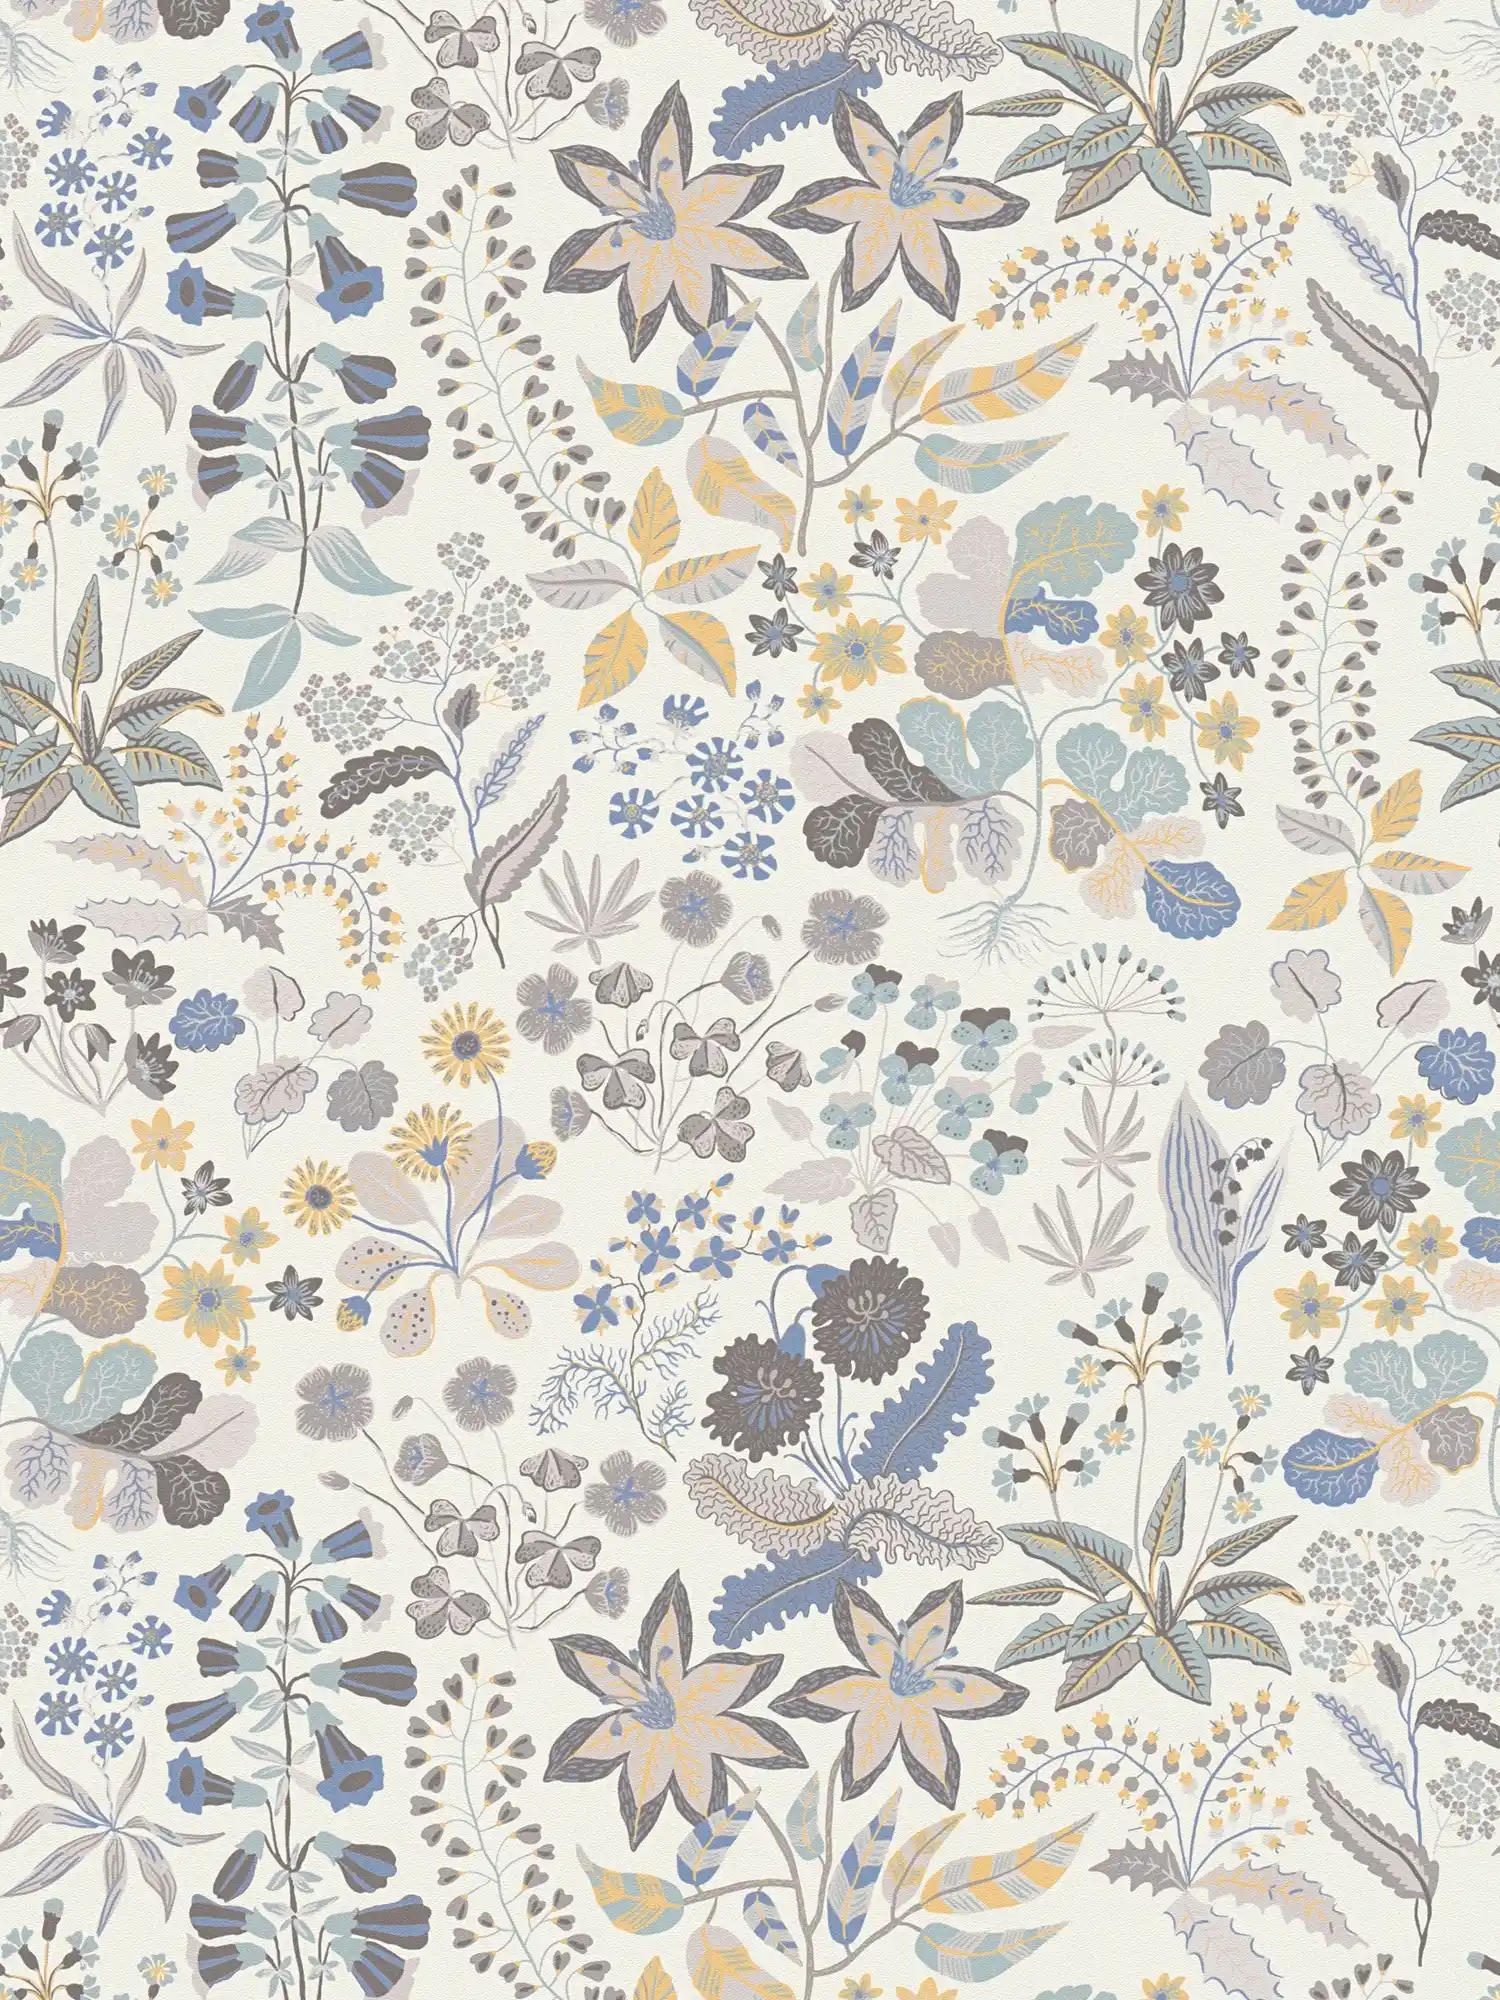 Vliestapete mit detaillierten Blumenmuster - Grau, Blau, Creme
